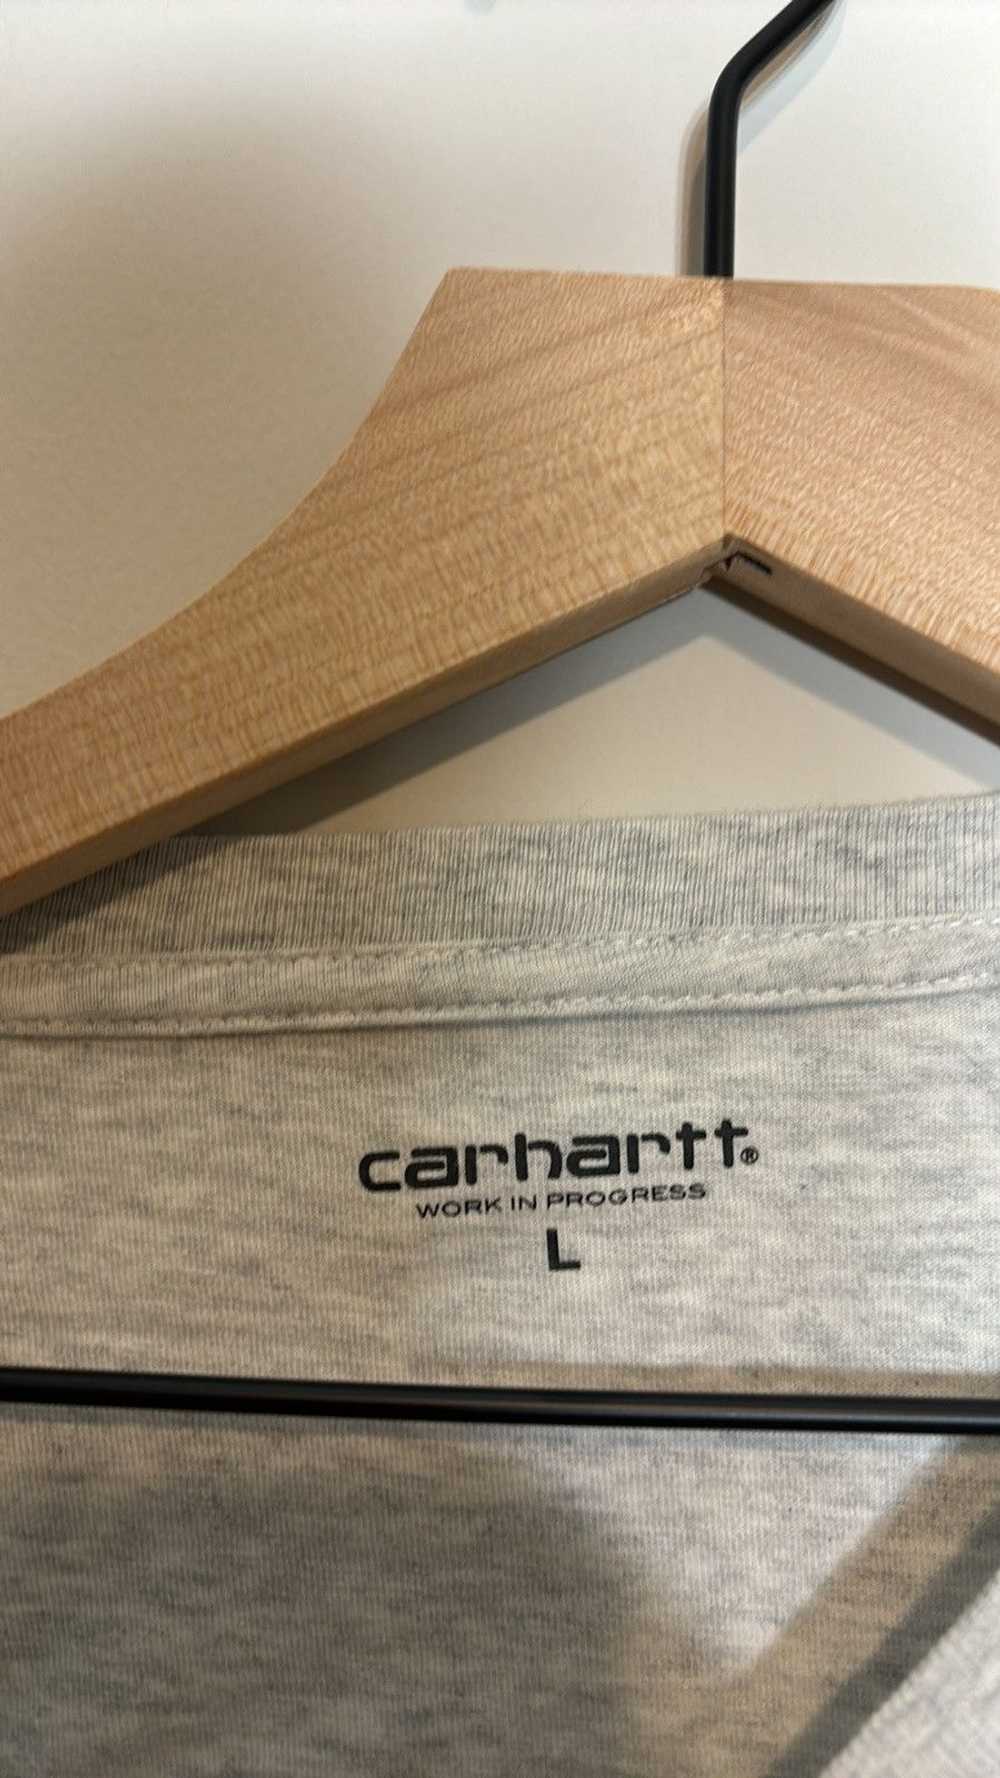 Carhartt × Carhartt Wip Carhartt WIP Shirt - image 3